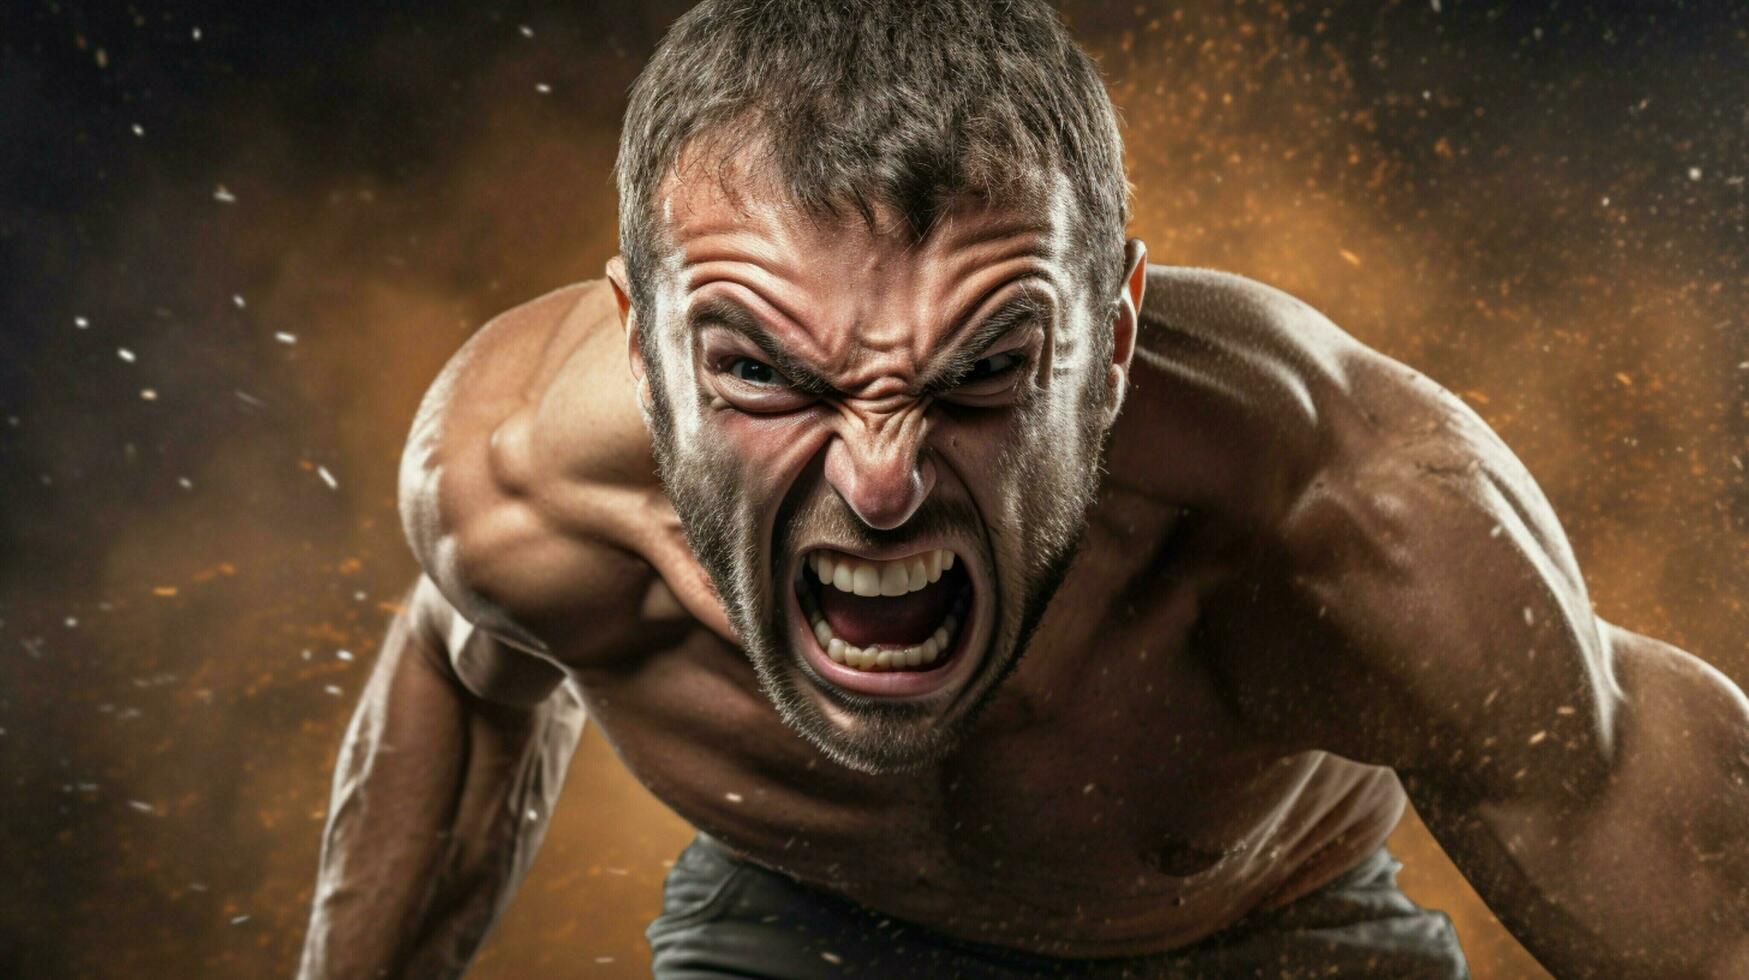 wütend männlich Athlet Stanzen mit Entschlossenheit und aggressiv foto